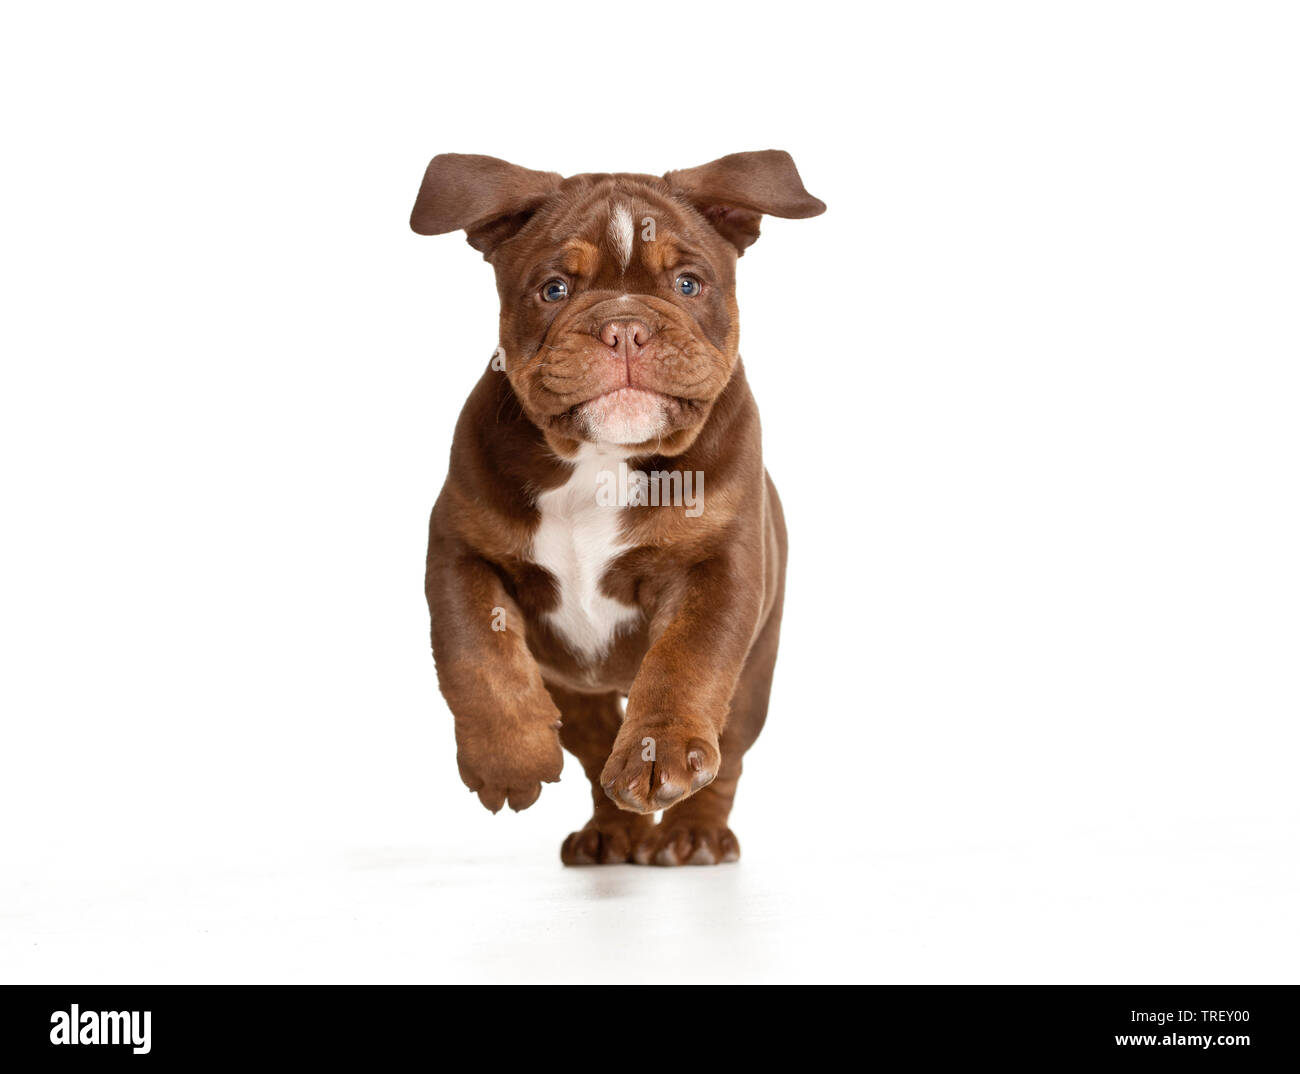 Bulldog Inglés. Cachorro corriendo hacia la cámara. Studio picture contra un fondo blanco. Alemania Foto de stock